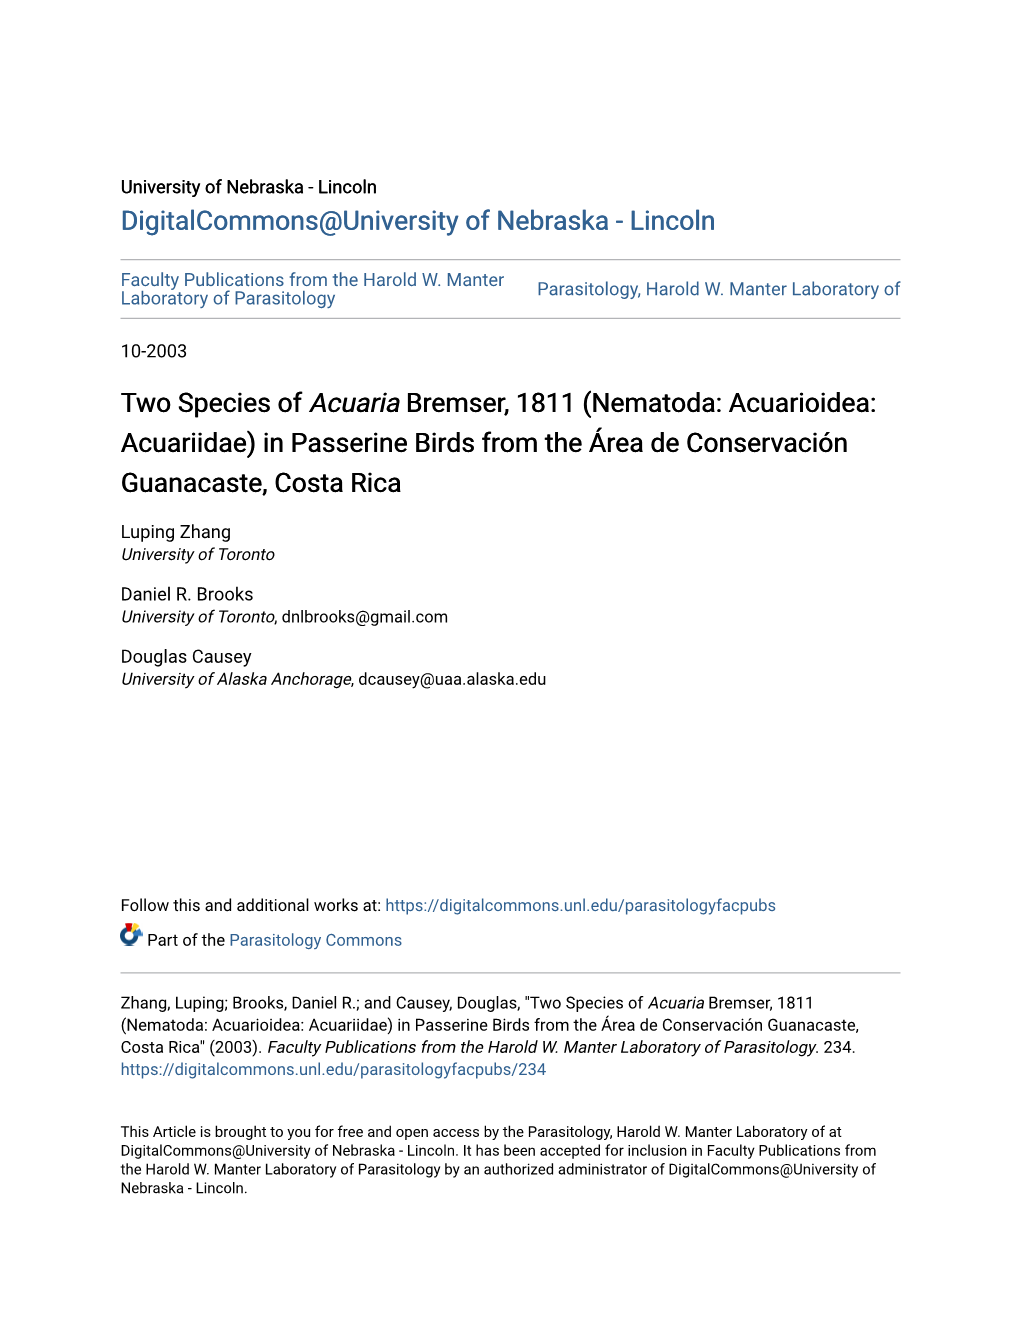 Two Species of Acuaria Bremser, 1811 (Nematoda: Acuarioidea: Acuariidae) in Passerine Birds from the Área De Conservación Guanacaste, Costa Rica